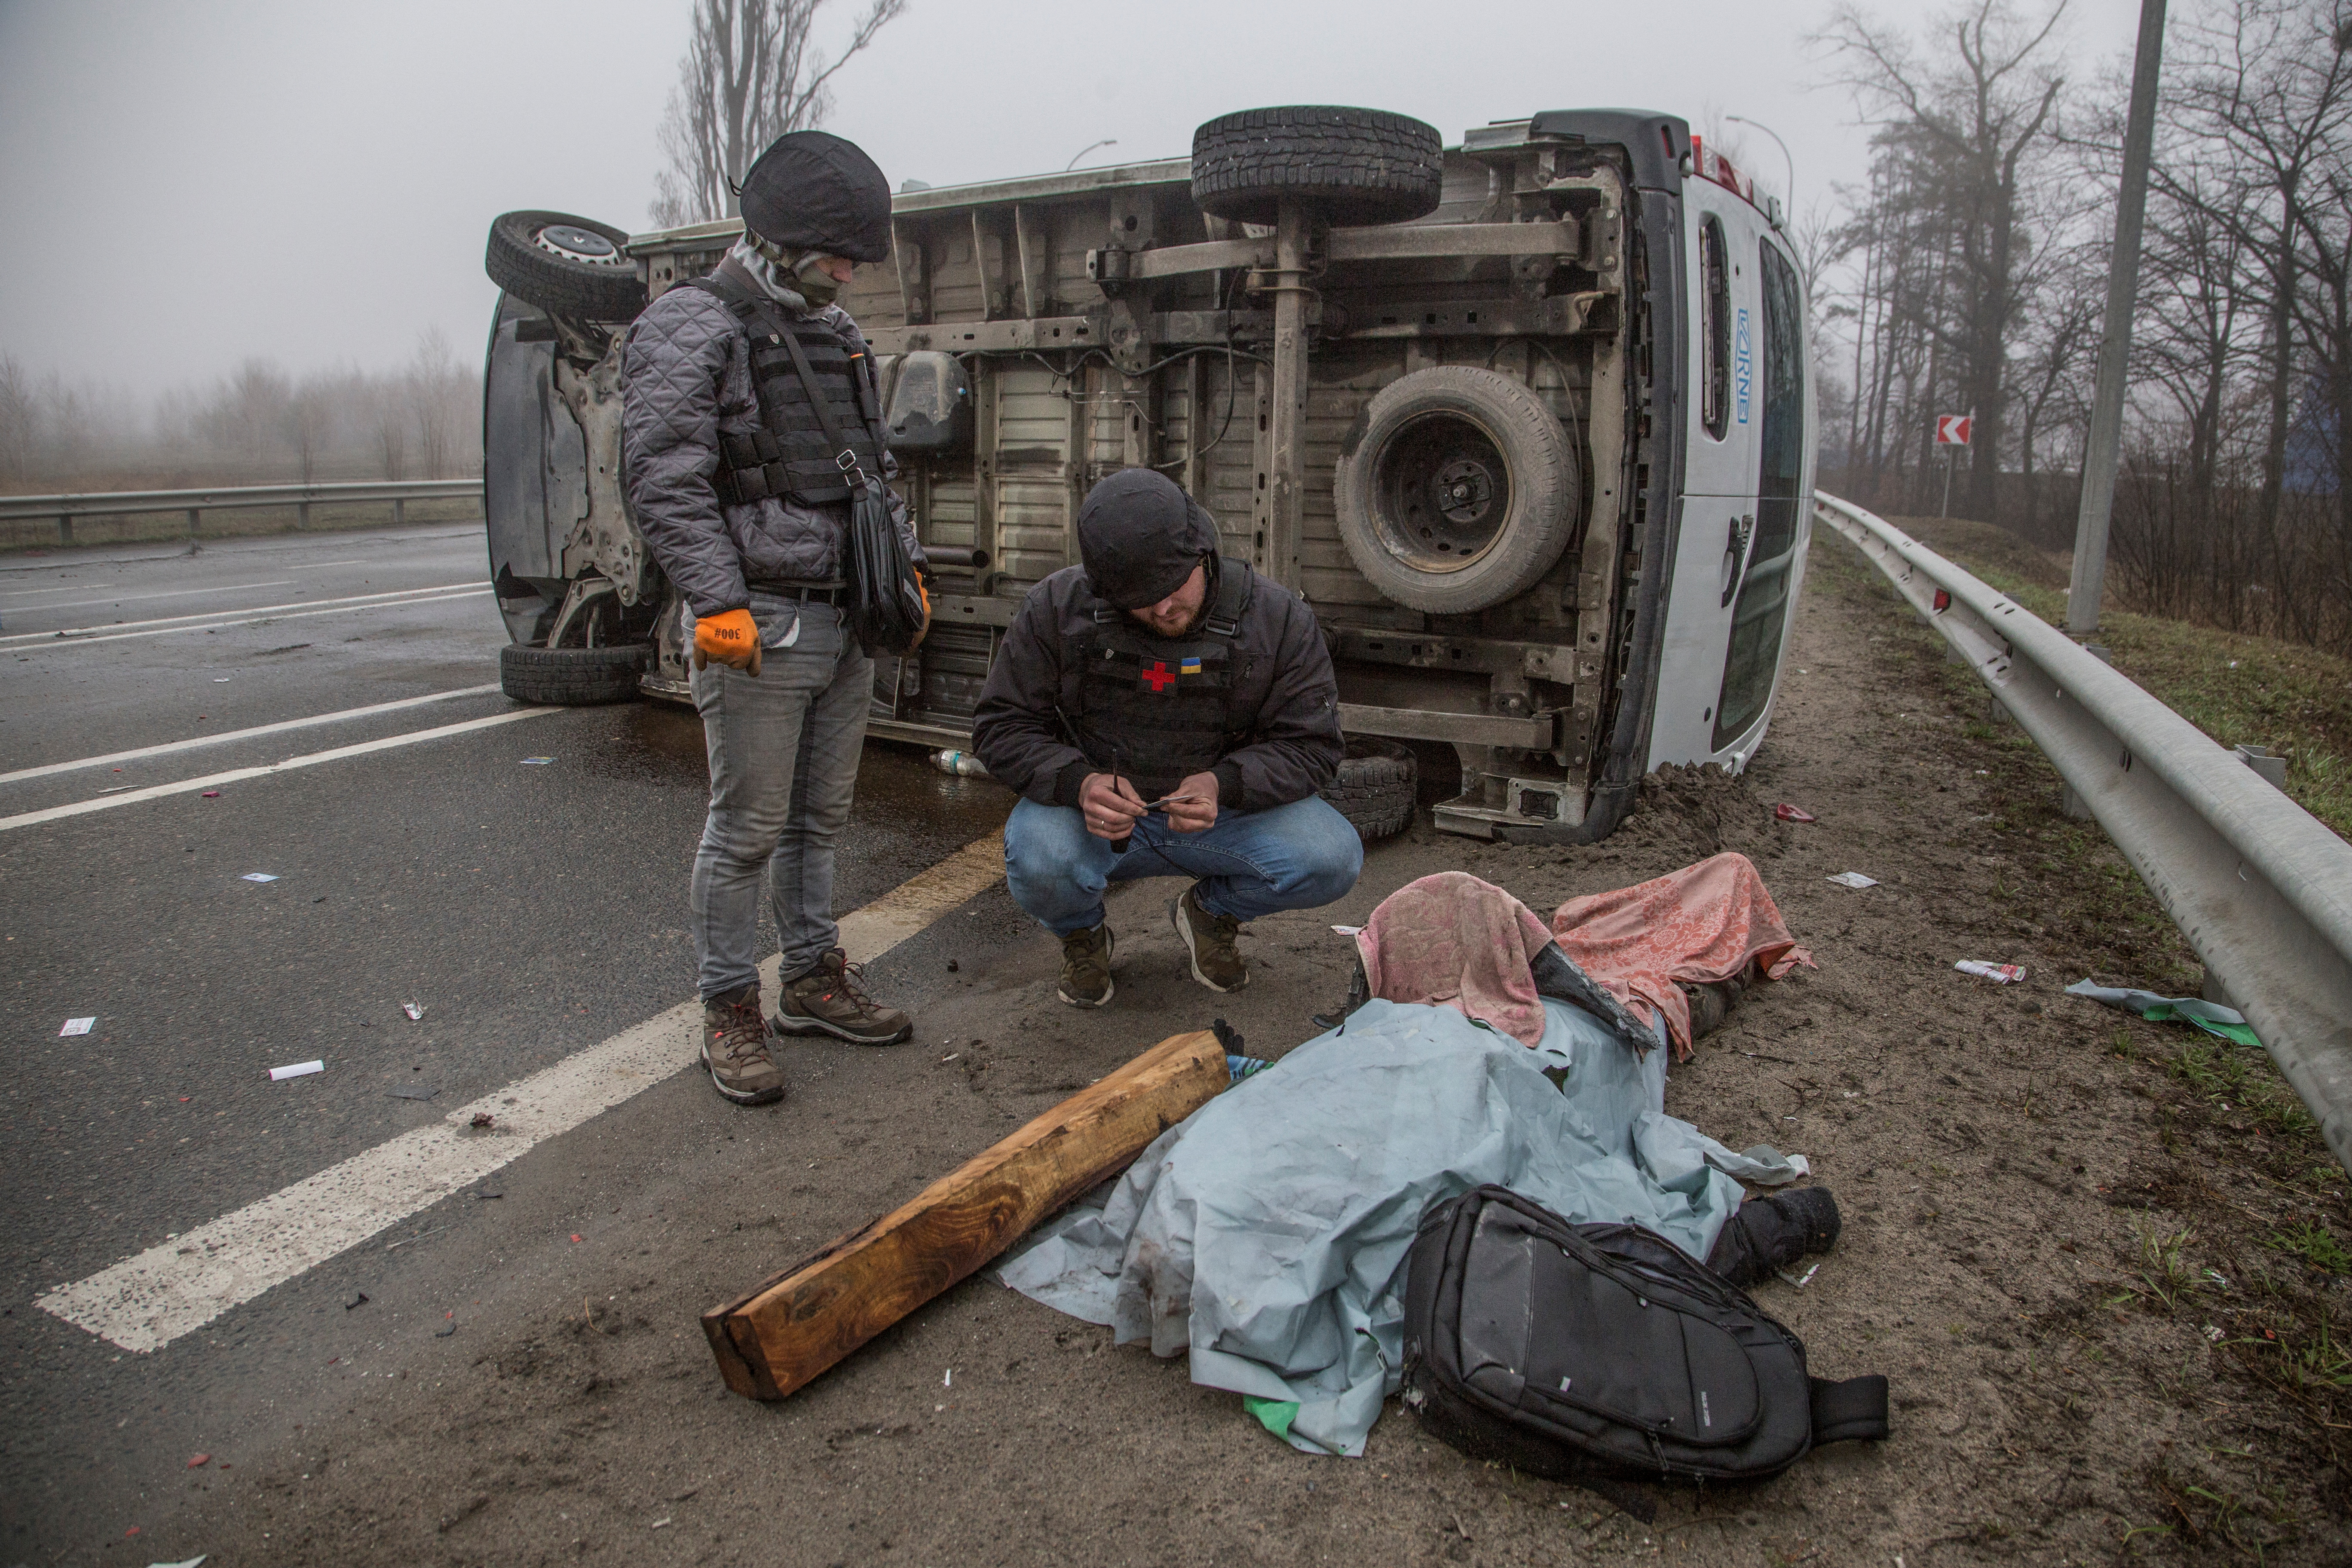 Un voluntario inspecciona el cuerpo de una persona muerta, mientras continúa el ataque de Rusia a Ucrania, en una calle de la ciudad de Bucha, en la región de Kyiv, Ucrania 1 de abril de 2022. REUTERS/Oleksandr Ratushniak